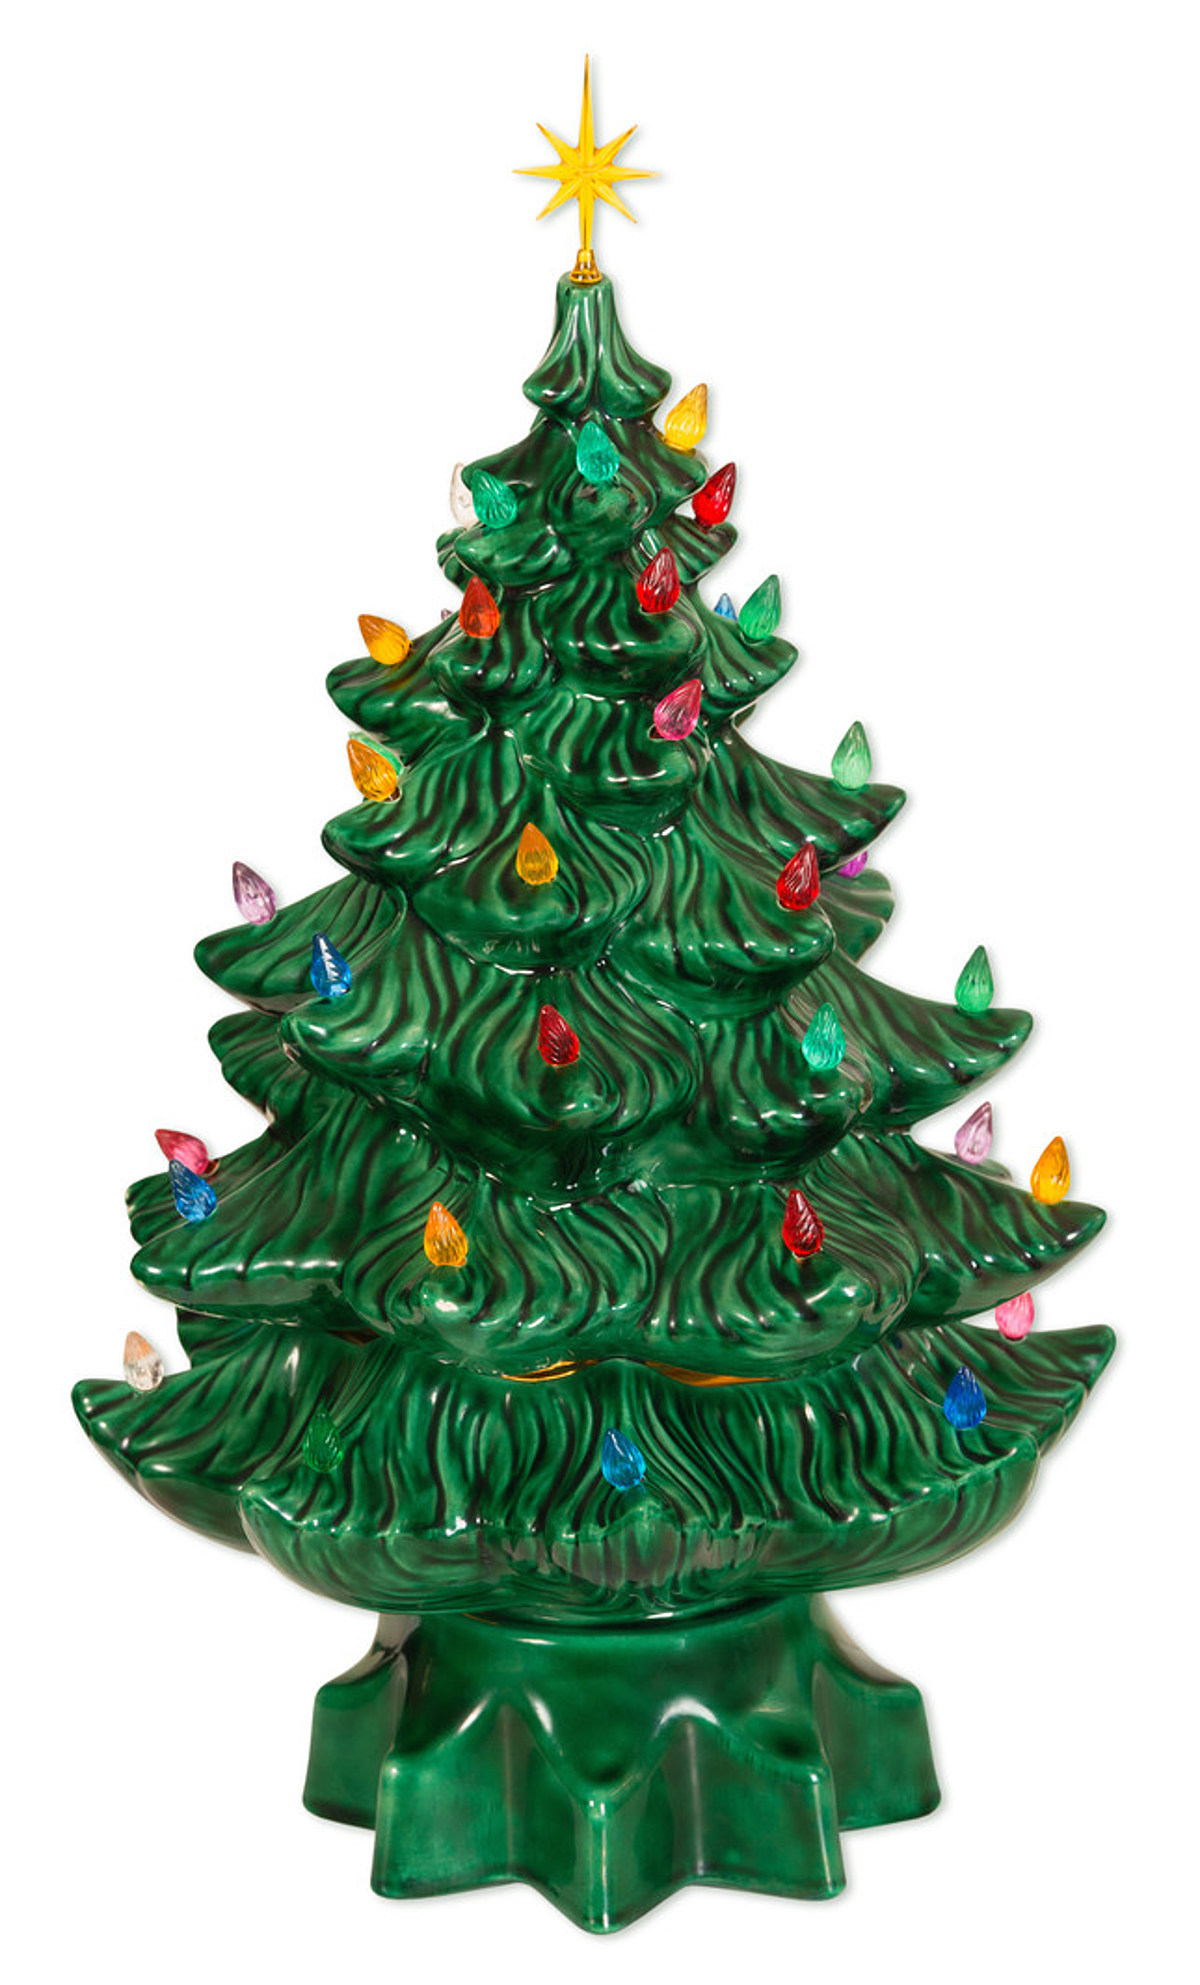 2018 Hallmark Disney BB 8 Star Wars Flat Metal Christmas Tree Ornament NEW 